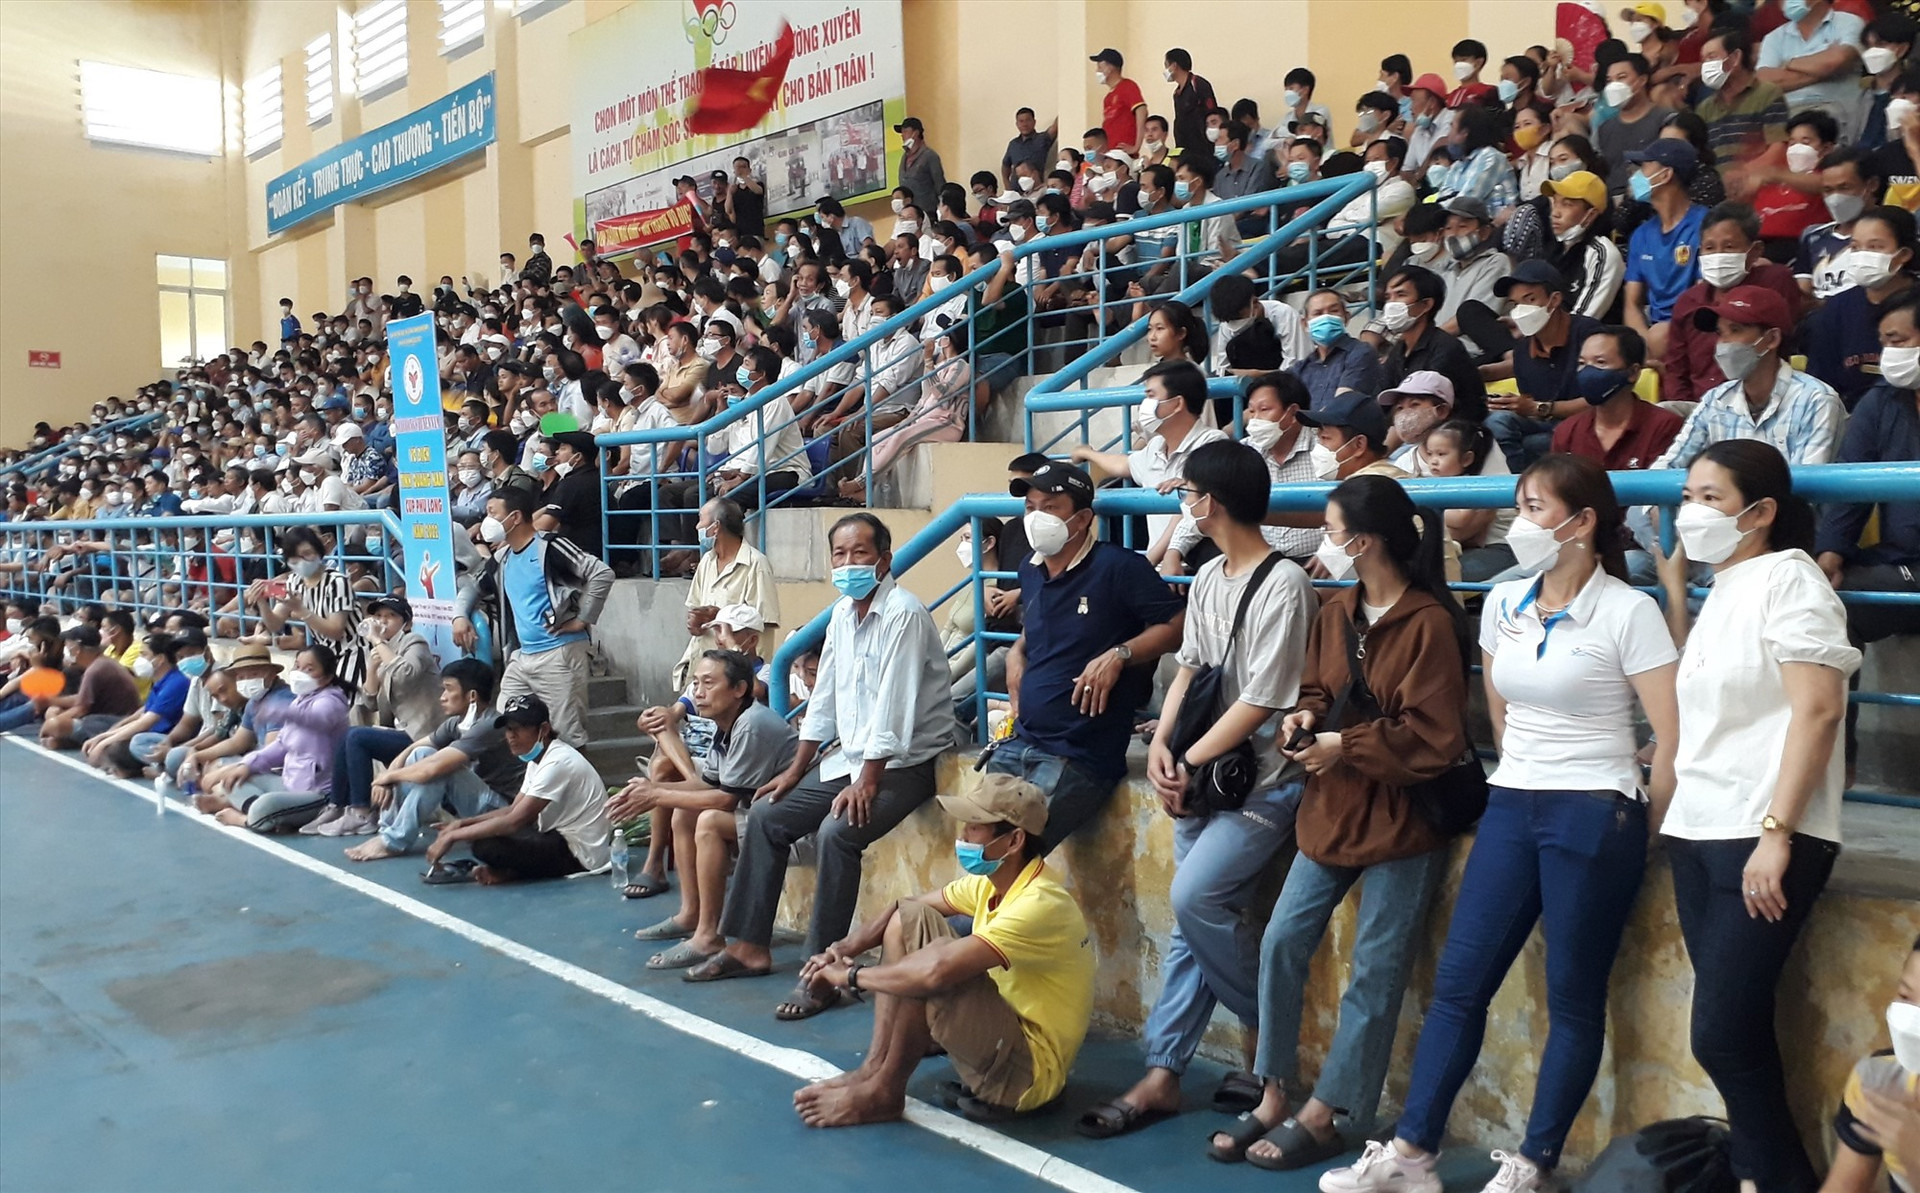 Khán giả phải đứng dưới sân để xem và cổ vũ do Nhà thi đấu TD-TT huyện Núi Thành không còn chỗ ngồi. Ảnh: T.V